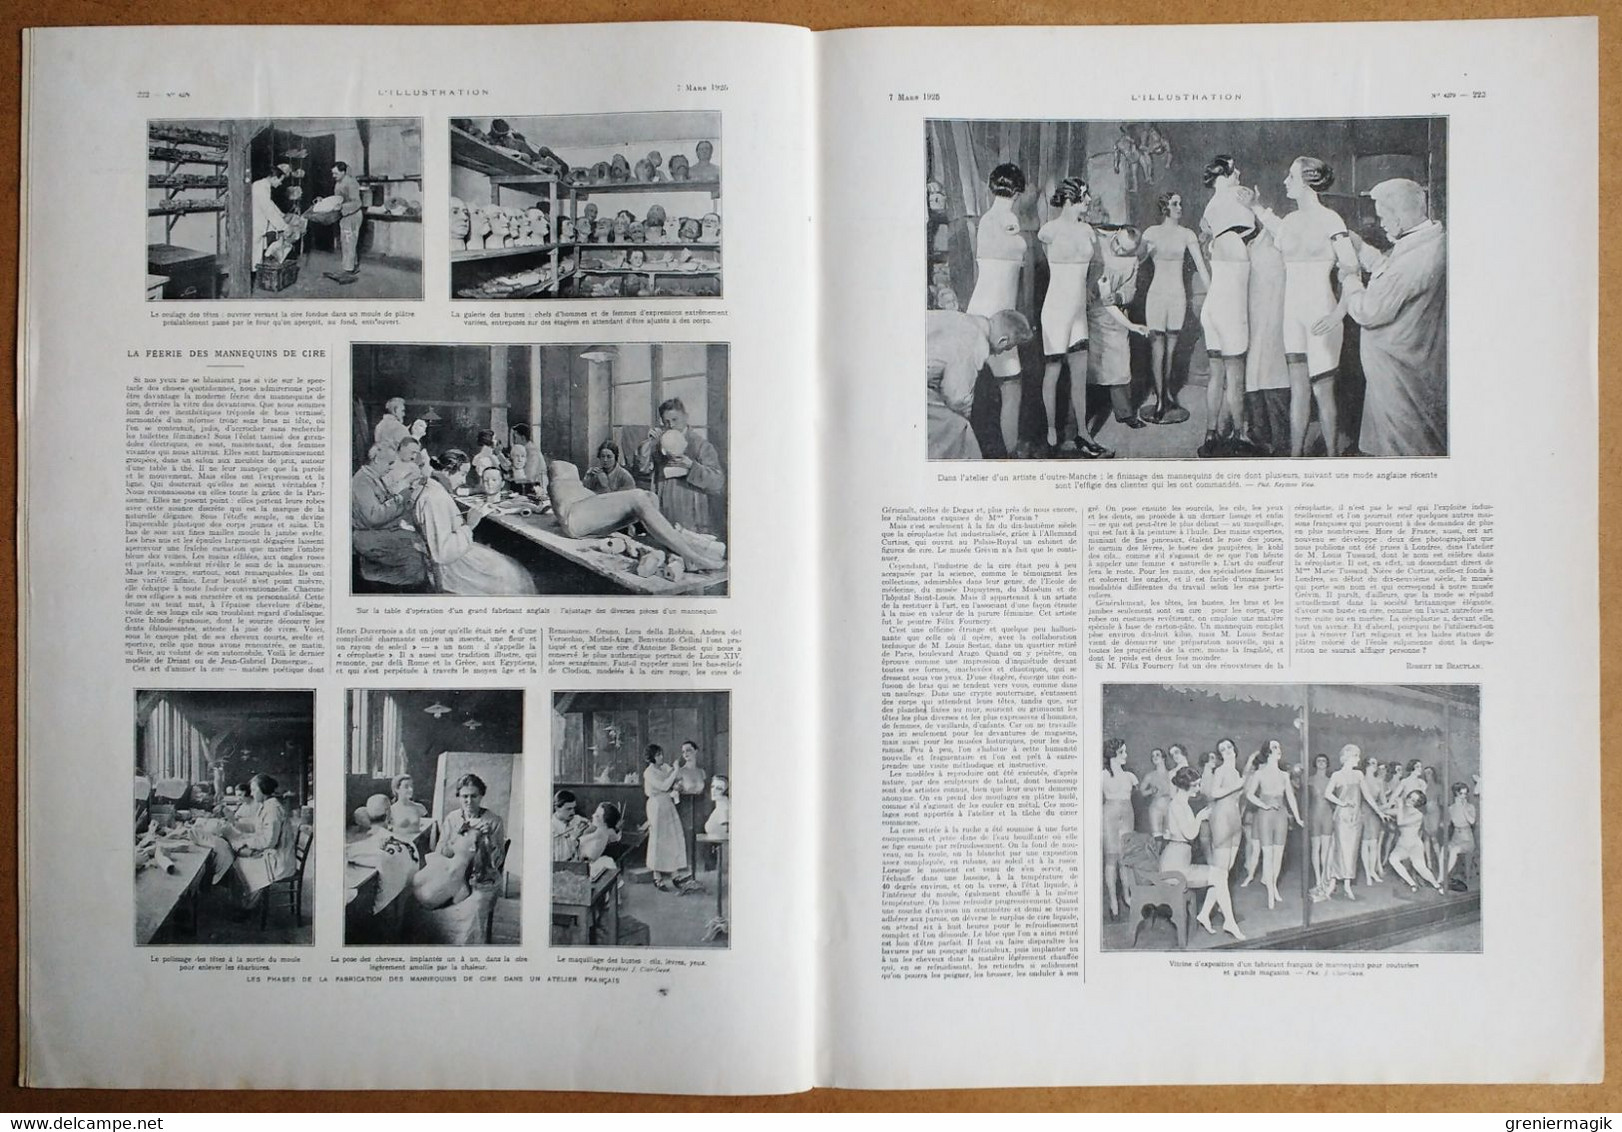 L'Illustration 4279 7/03/1925 Ile de Ré La Rochelle/Mort de Fritz Ebert/Annam Hué/Pierre Frondaie/Mannequins de cire